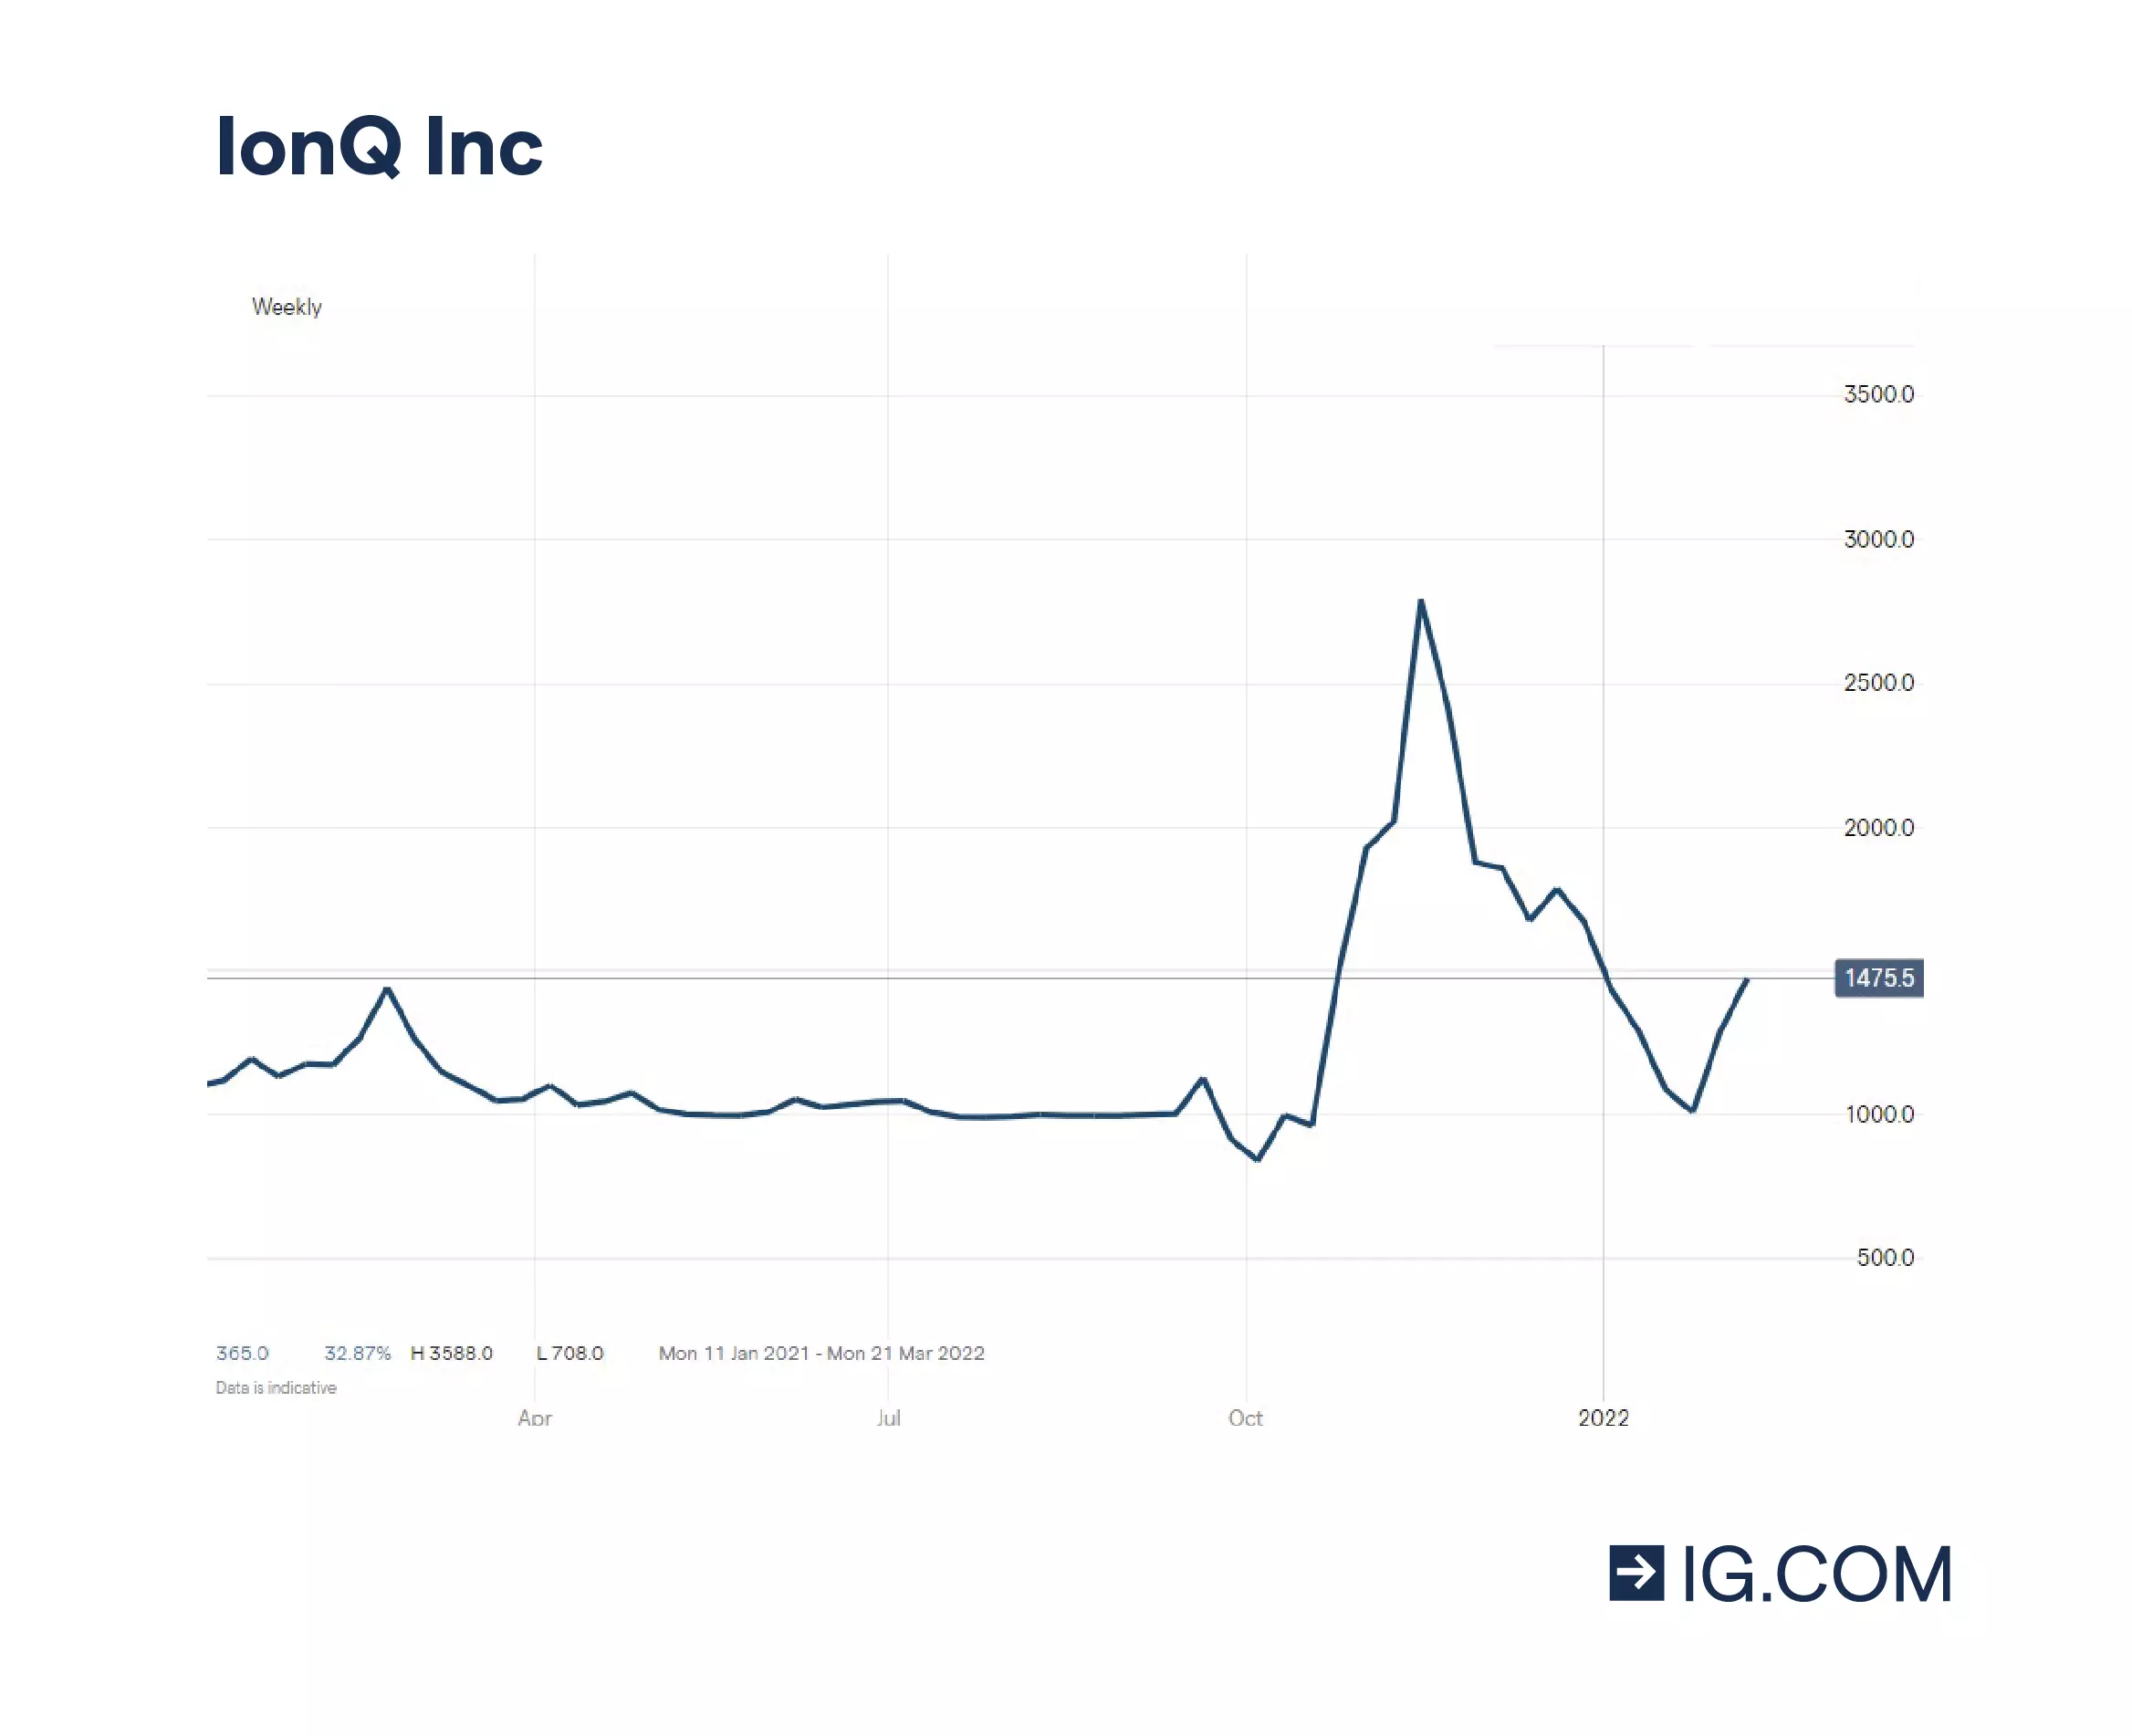 Historique de cours récent d'IonQ, qui indique une croissance impressionnante pour une société récente.